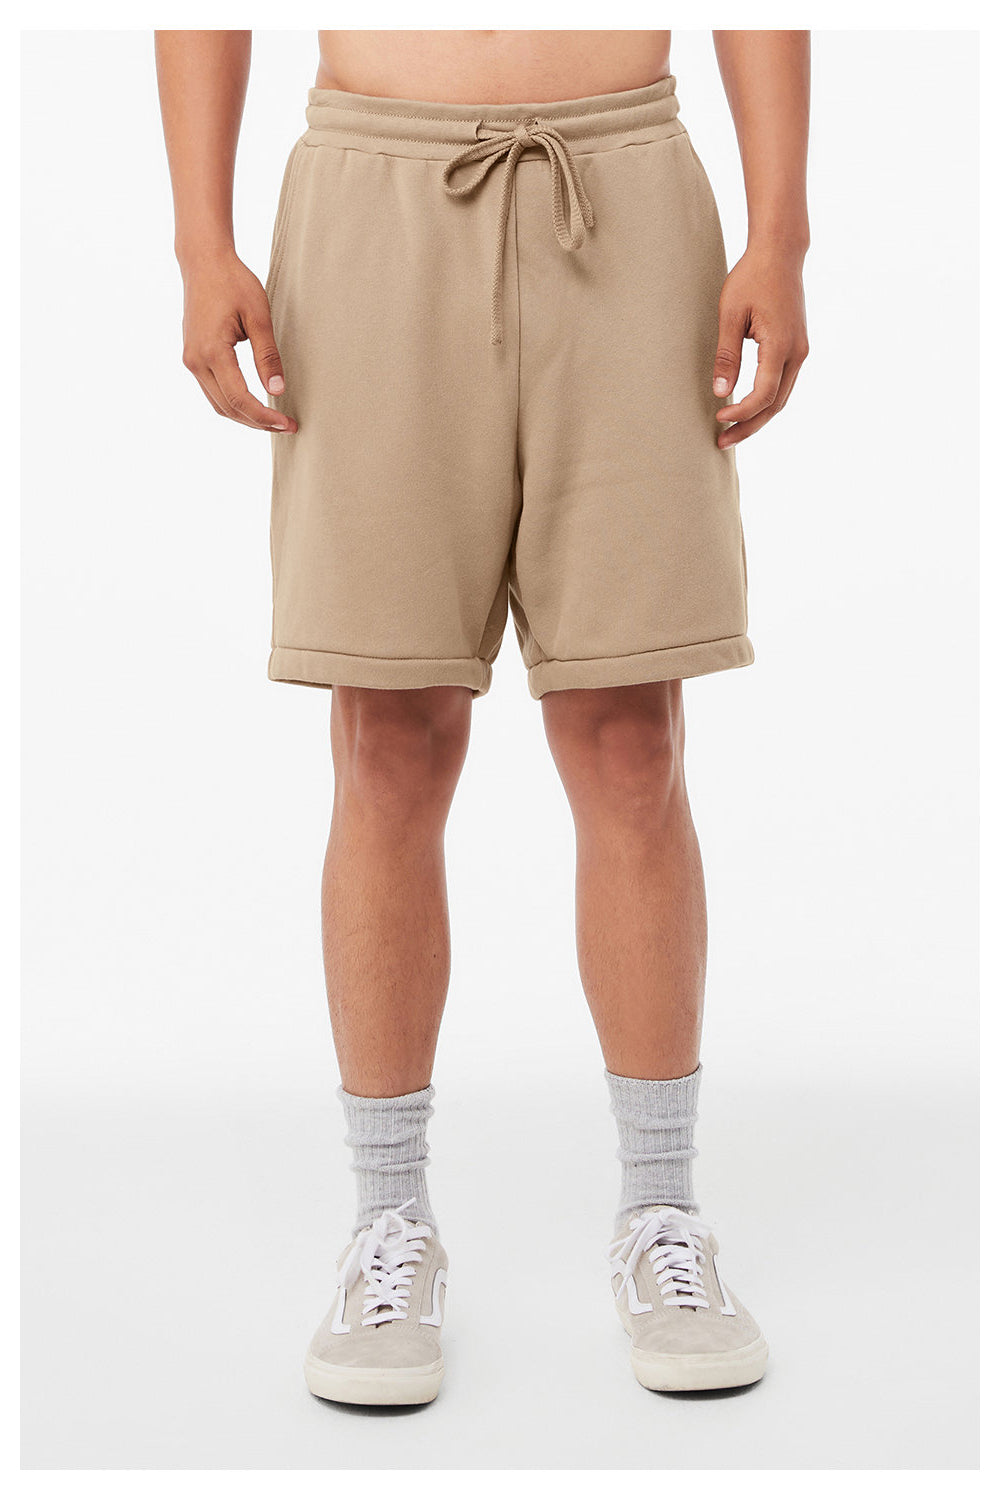 Bella + Canvas 3724 Mens Shorts w/ Pockets Tan Model Front